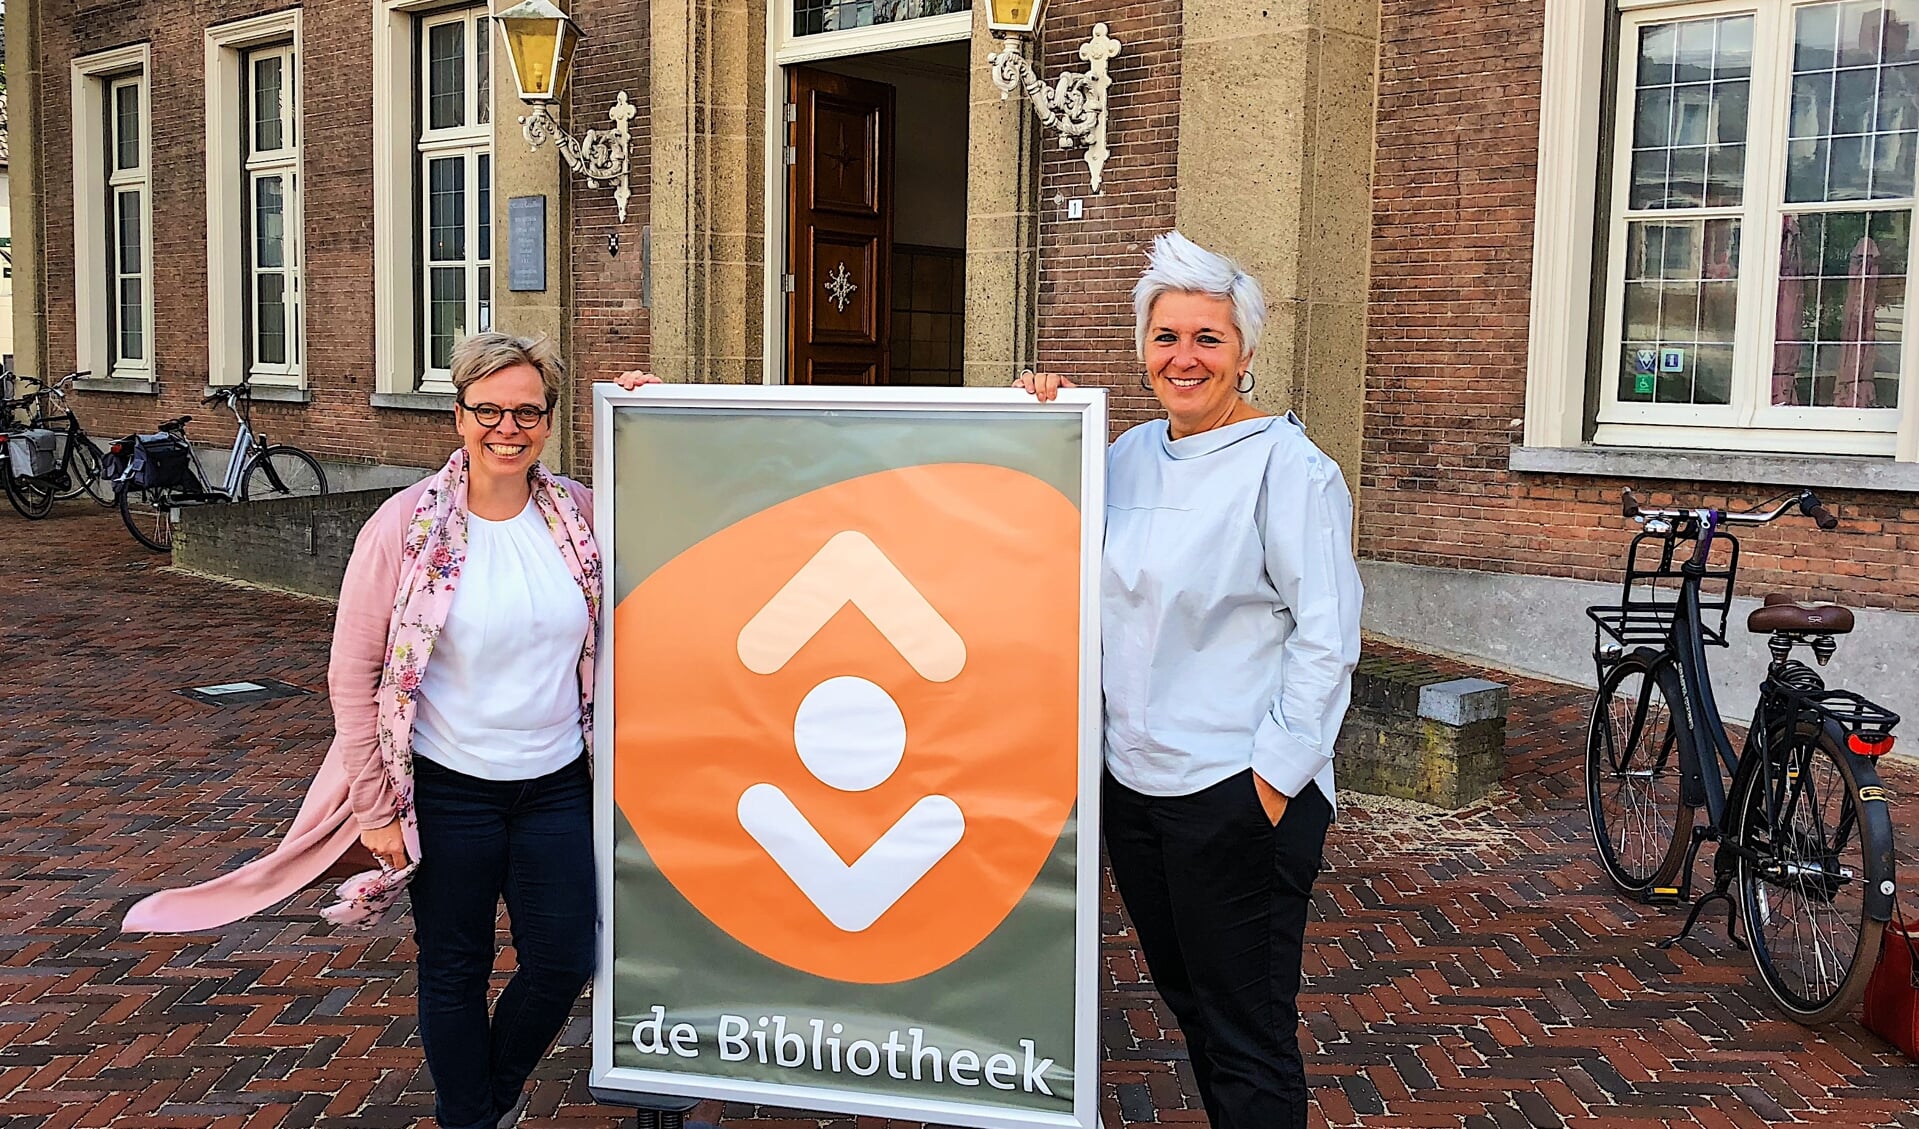 Eshter de Bie (ONS Welzijn) en Natasja de Groot (Bibliotheek Meierijstad) leggen uit waarom dit initiatief zo belangrijk is.